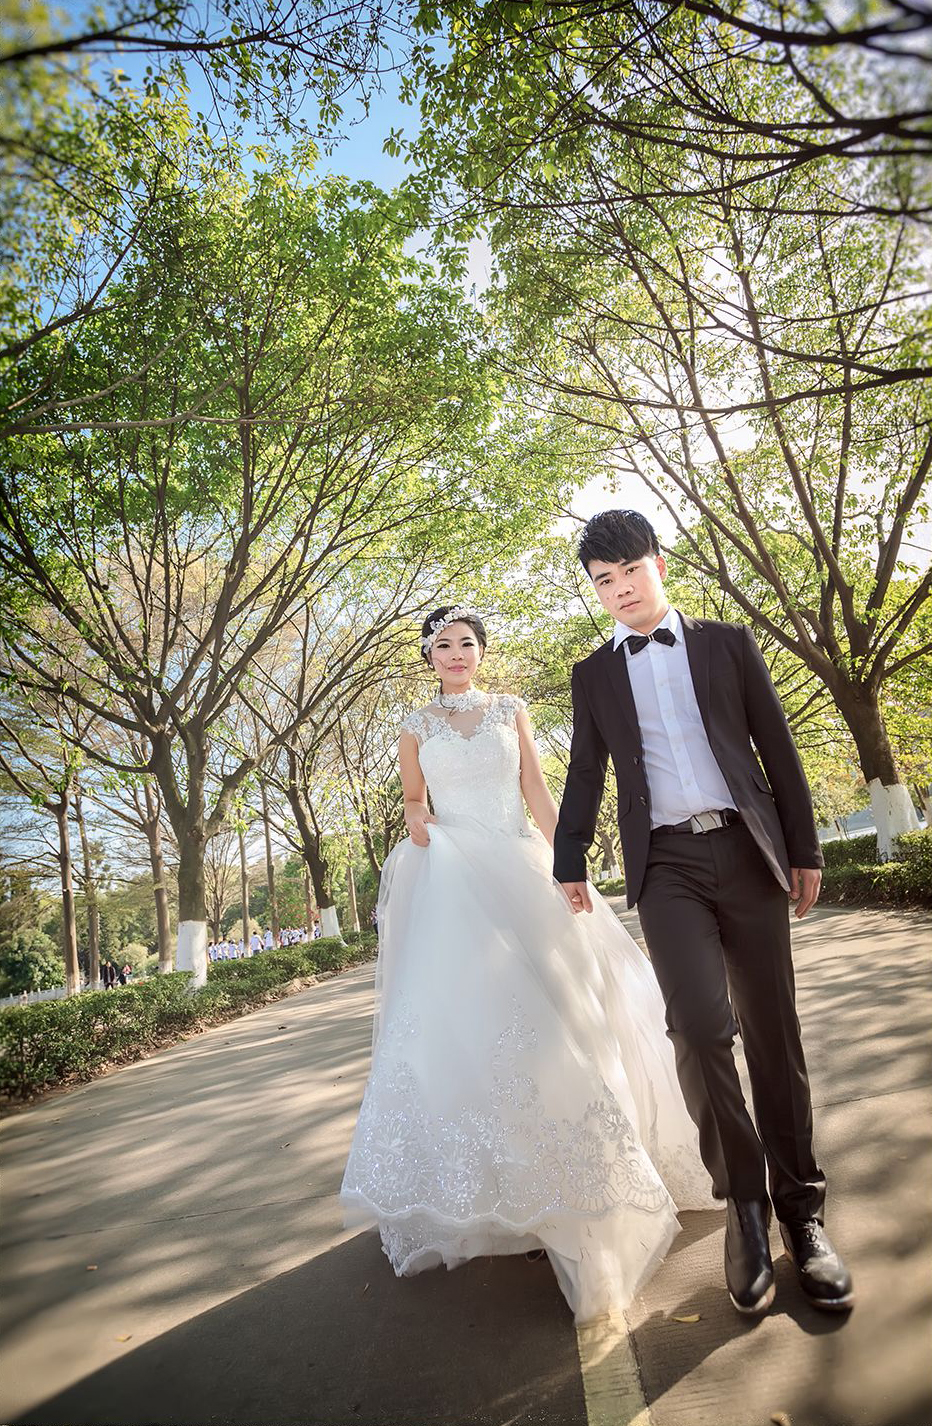 2017年8月广州婚纱照图片,佛山婚纱照,婚纱照图片